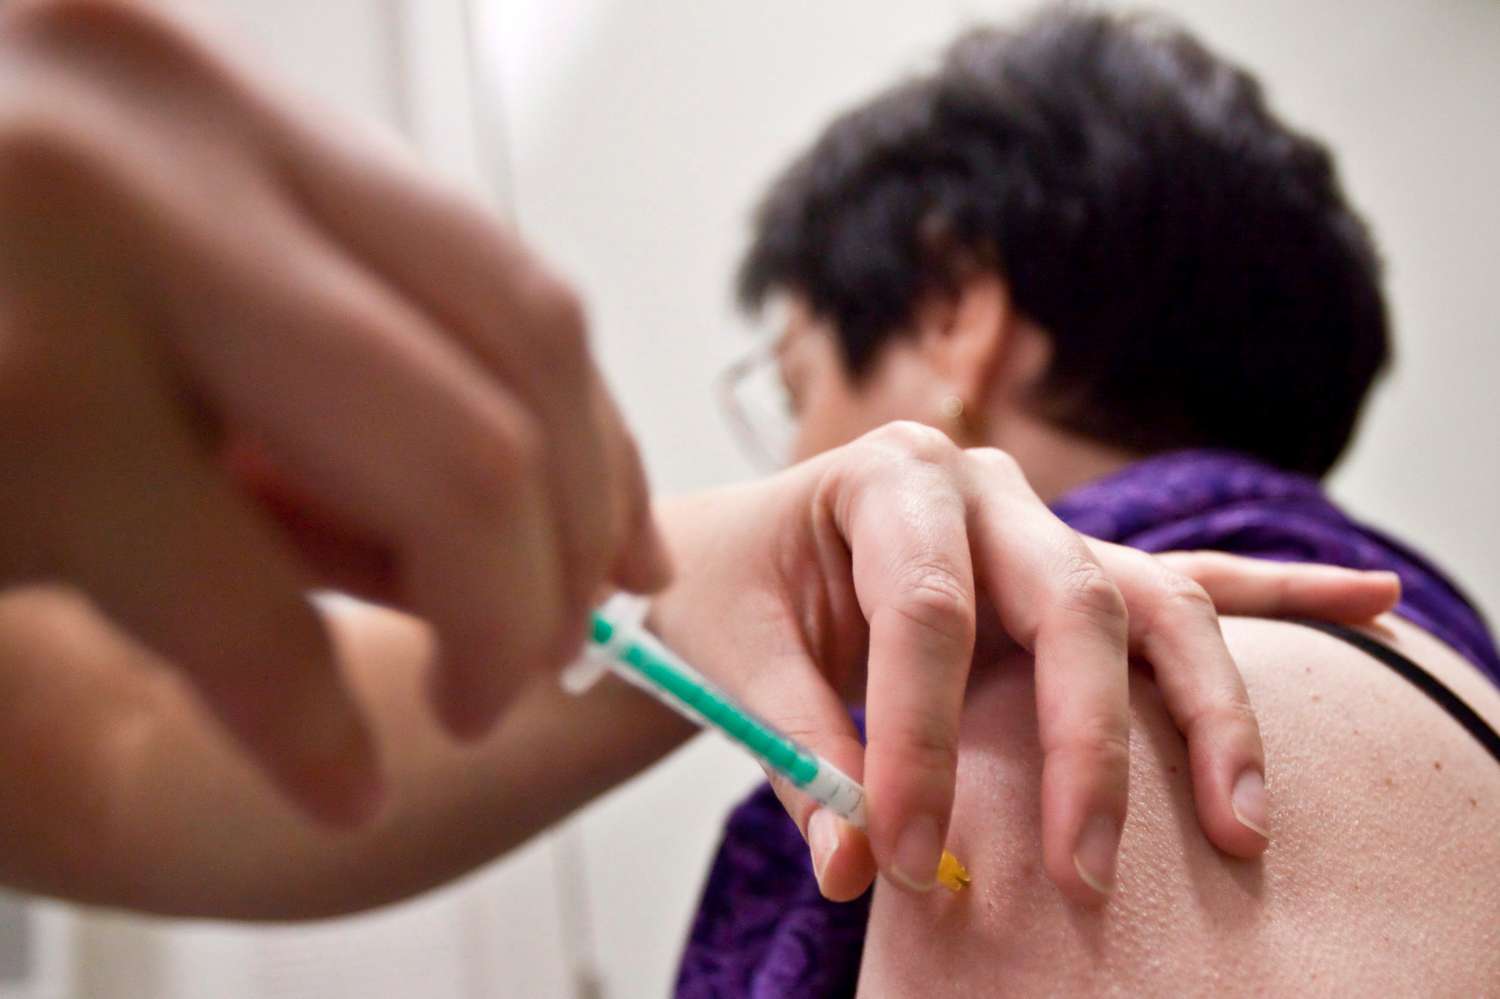 Informan que se encuentra disponible la segunda tanda de vacunas antigripales para afiliados al PAMI